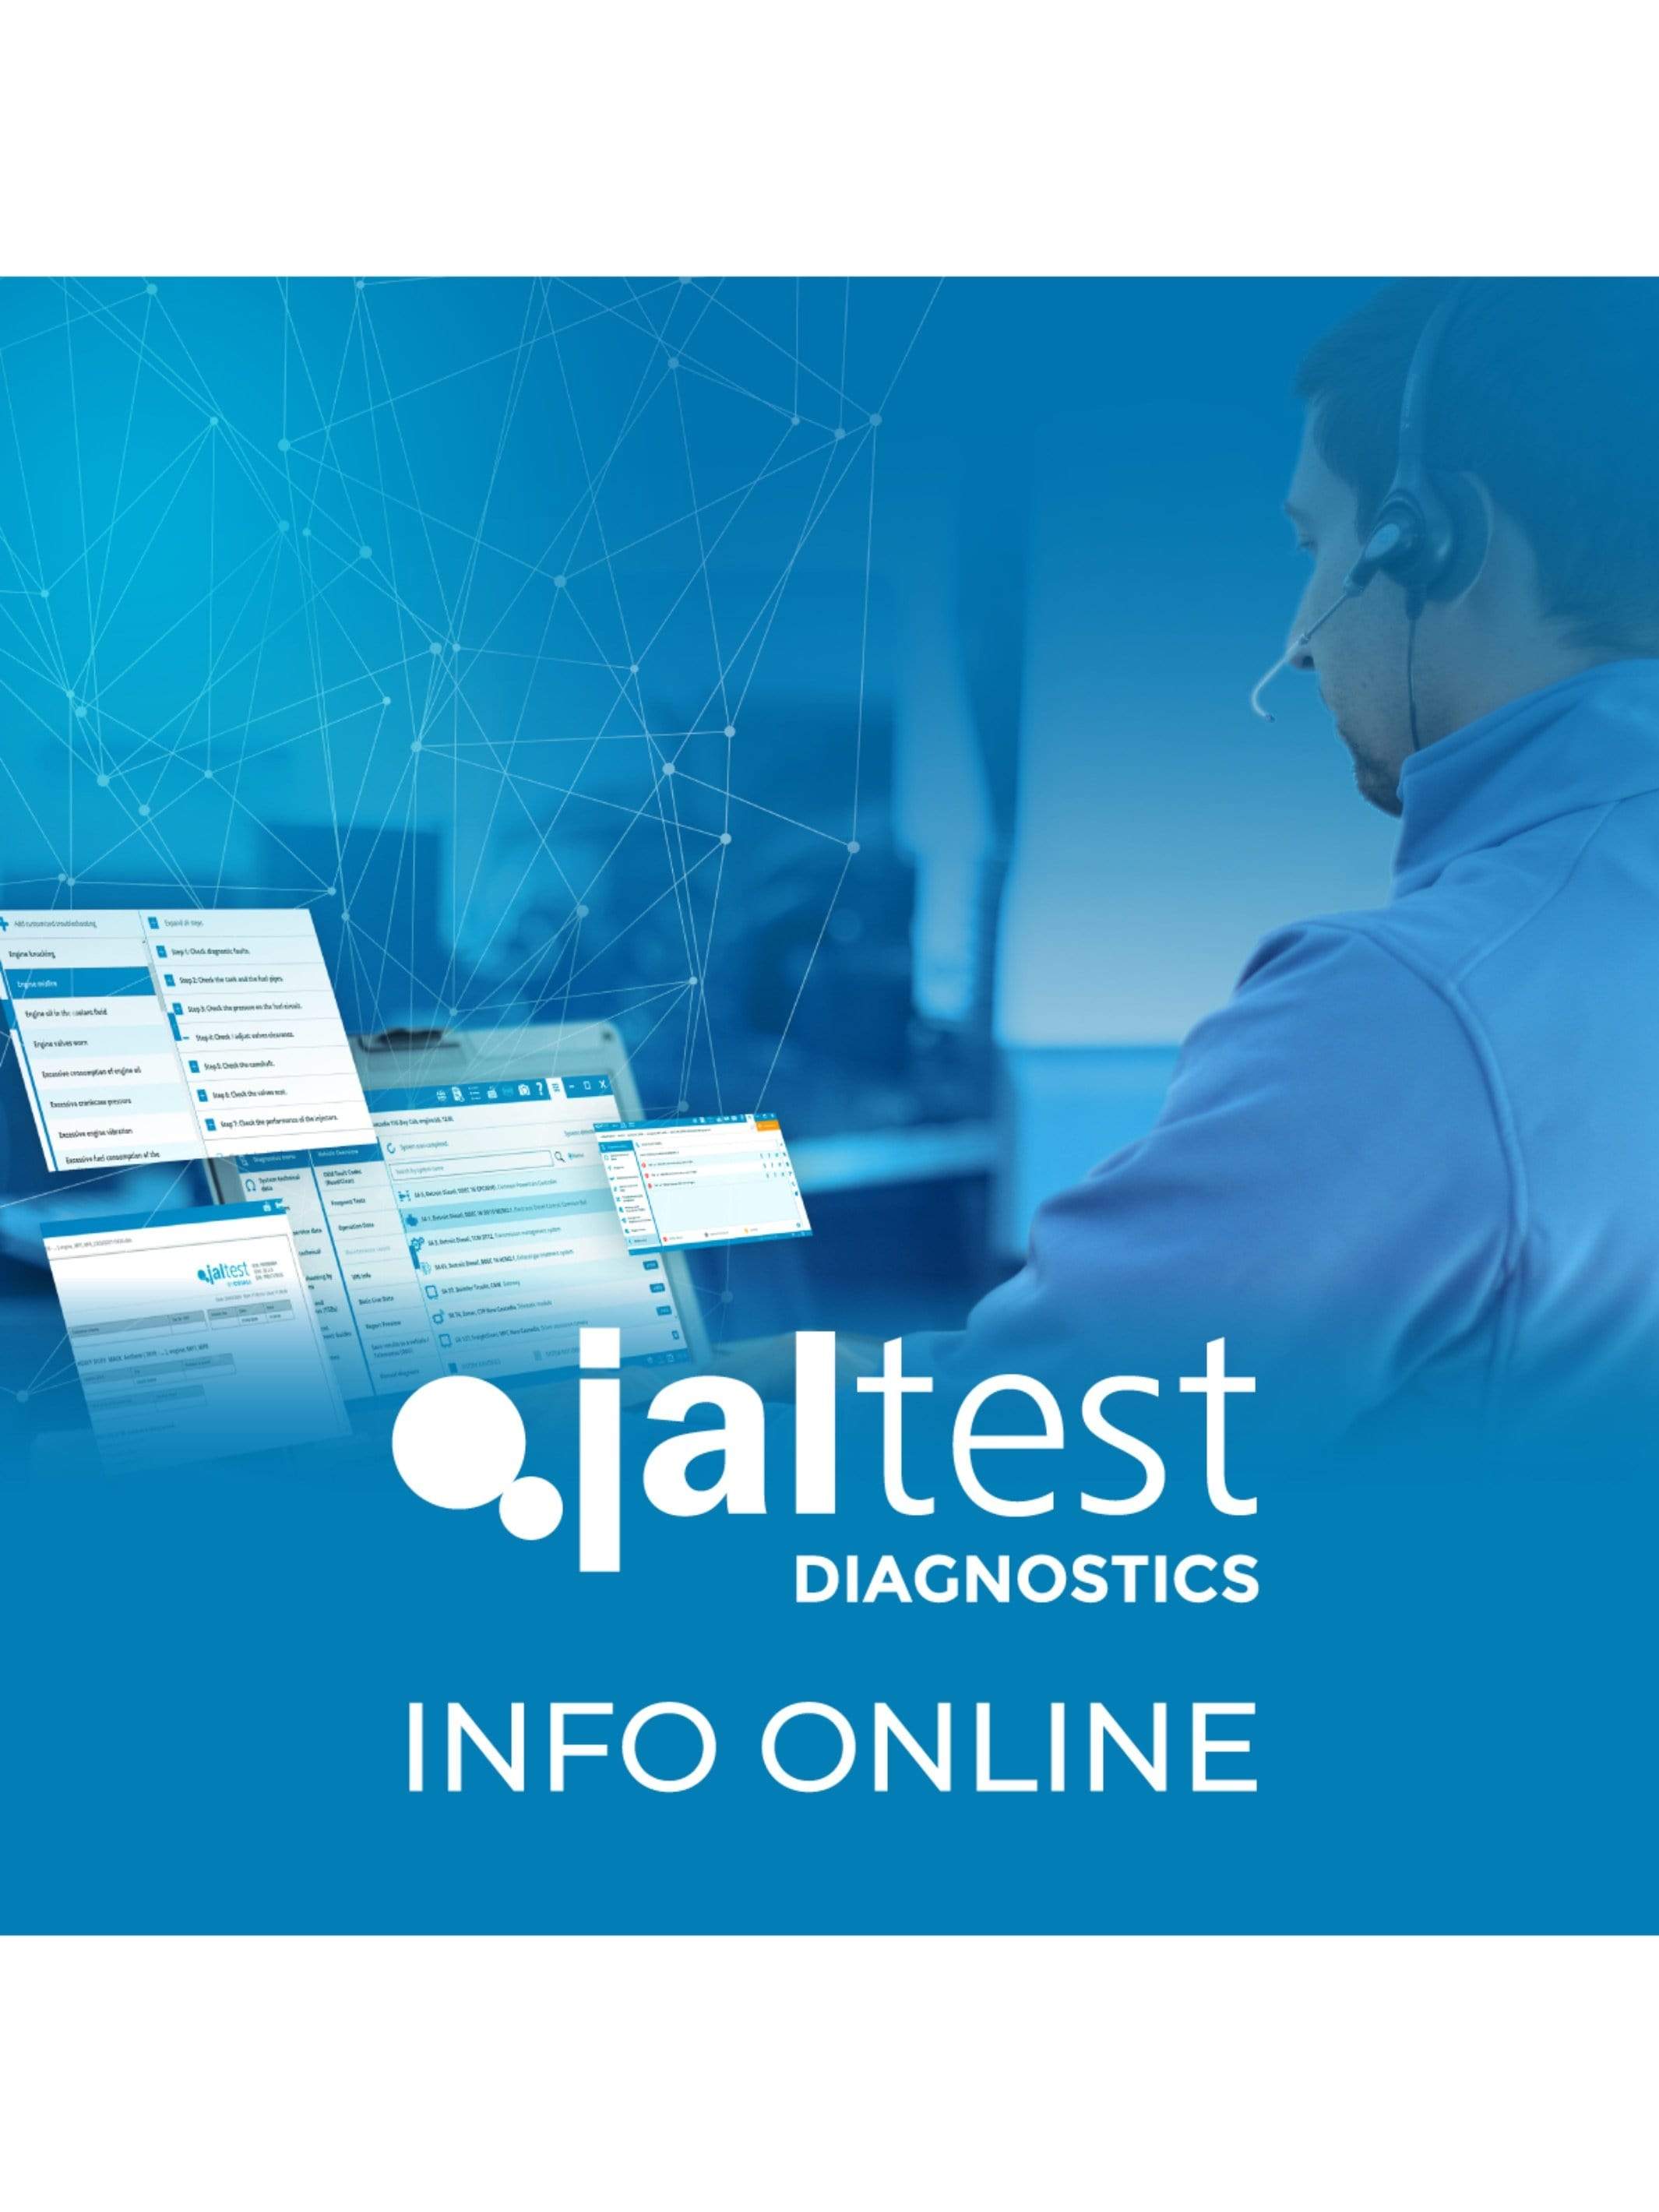 Jaltest CV Diagnostics Info - Jaltest Commercial Vehicle, Construction & Heavy Equipment Diagnostic Tool